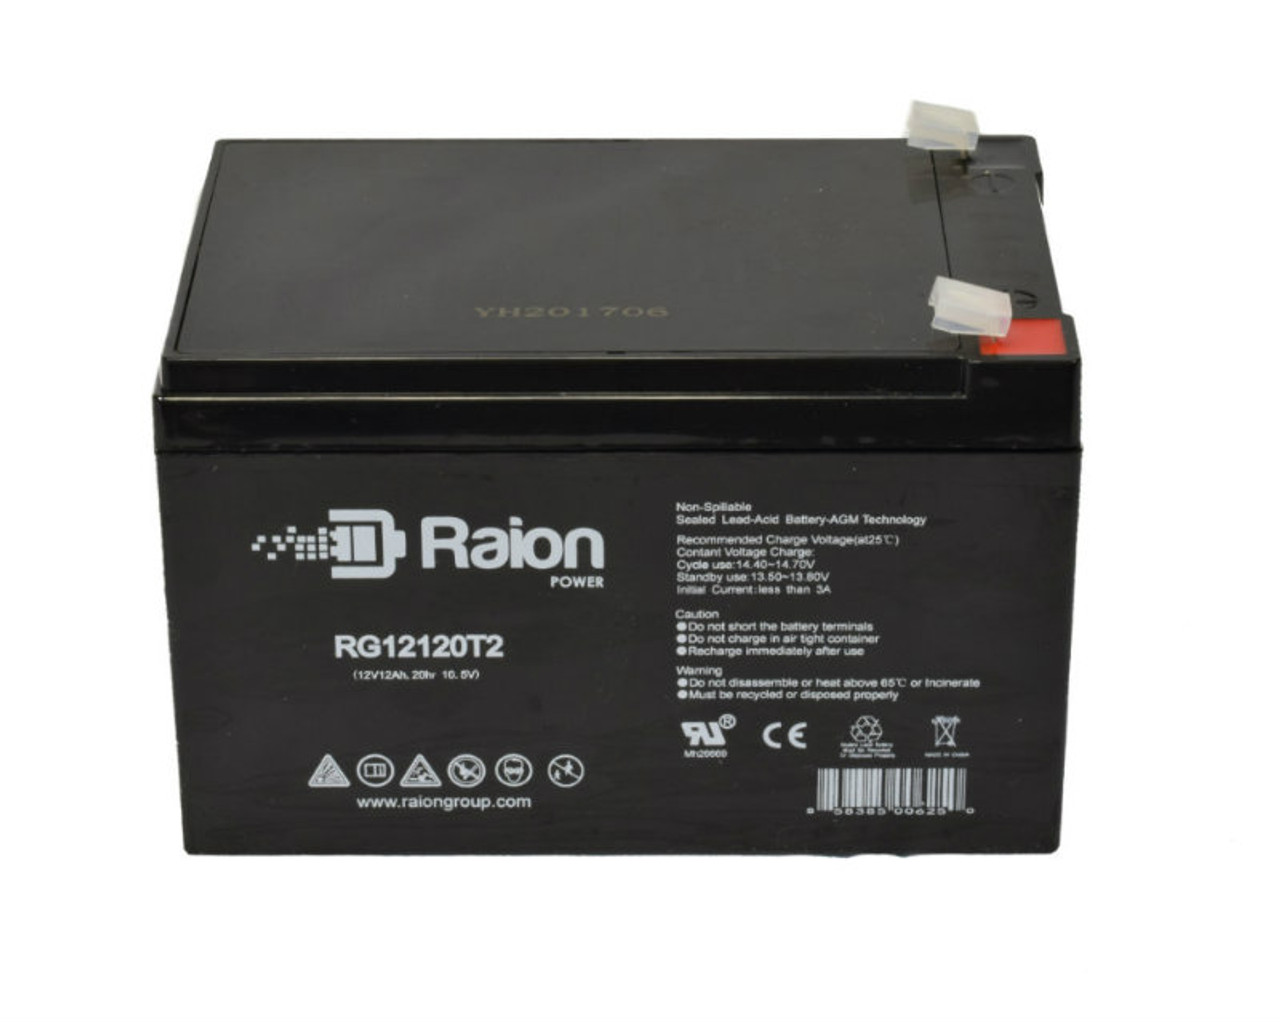 Raion Power RG12120T2 SLA Battery for Henglypower HL12120